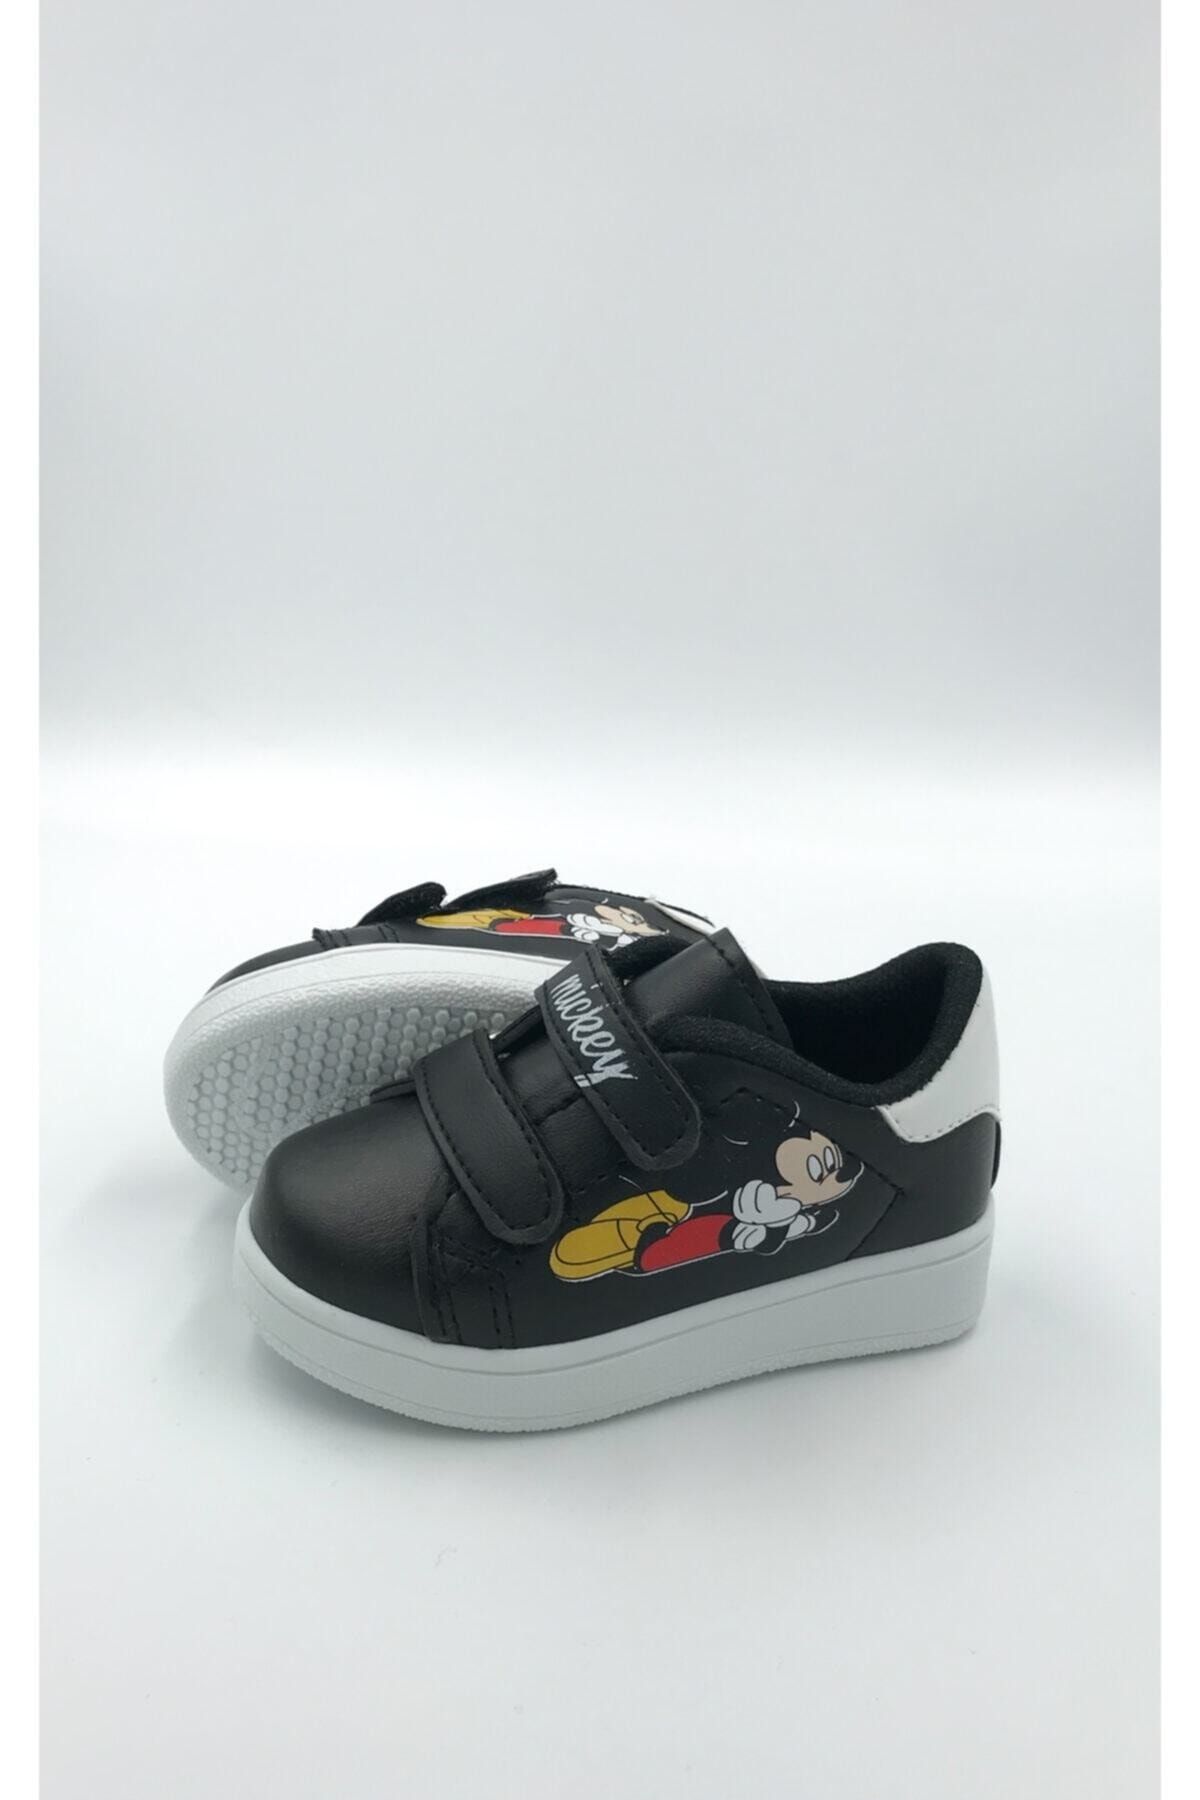 DARKLOW Md-01 Mickey Desenli Çocuk Spor Sneaker Günlük Cırtlı Spor Ayakkabı Siyah Beyaz